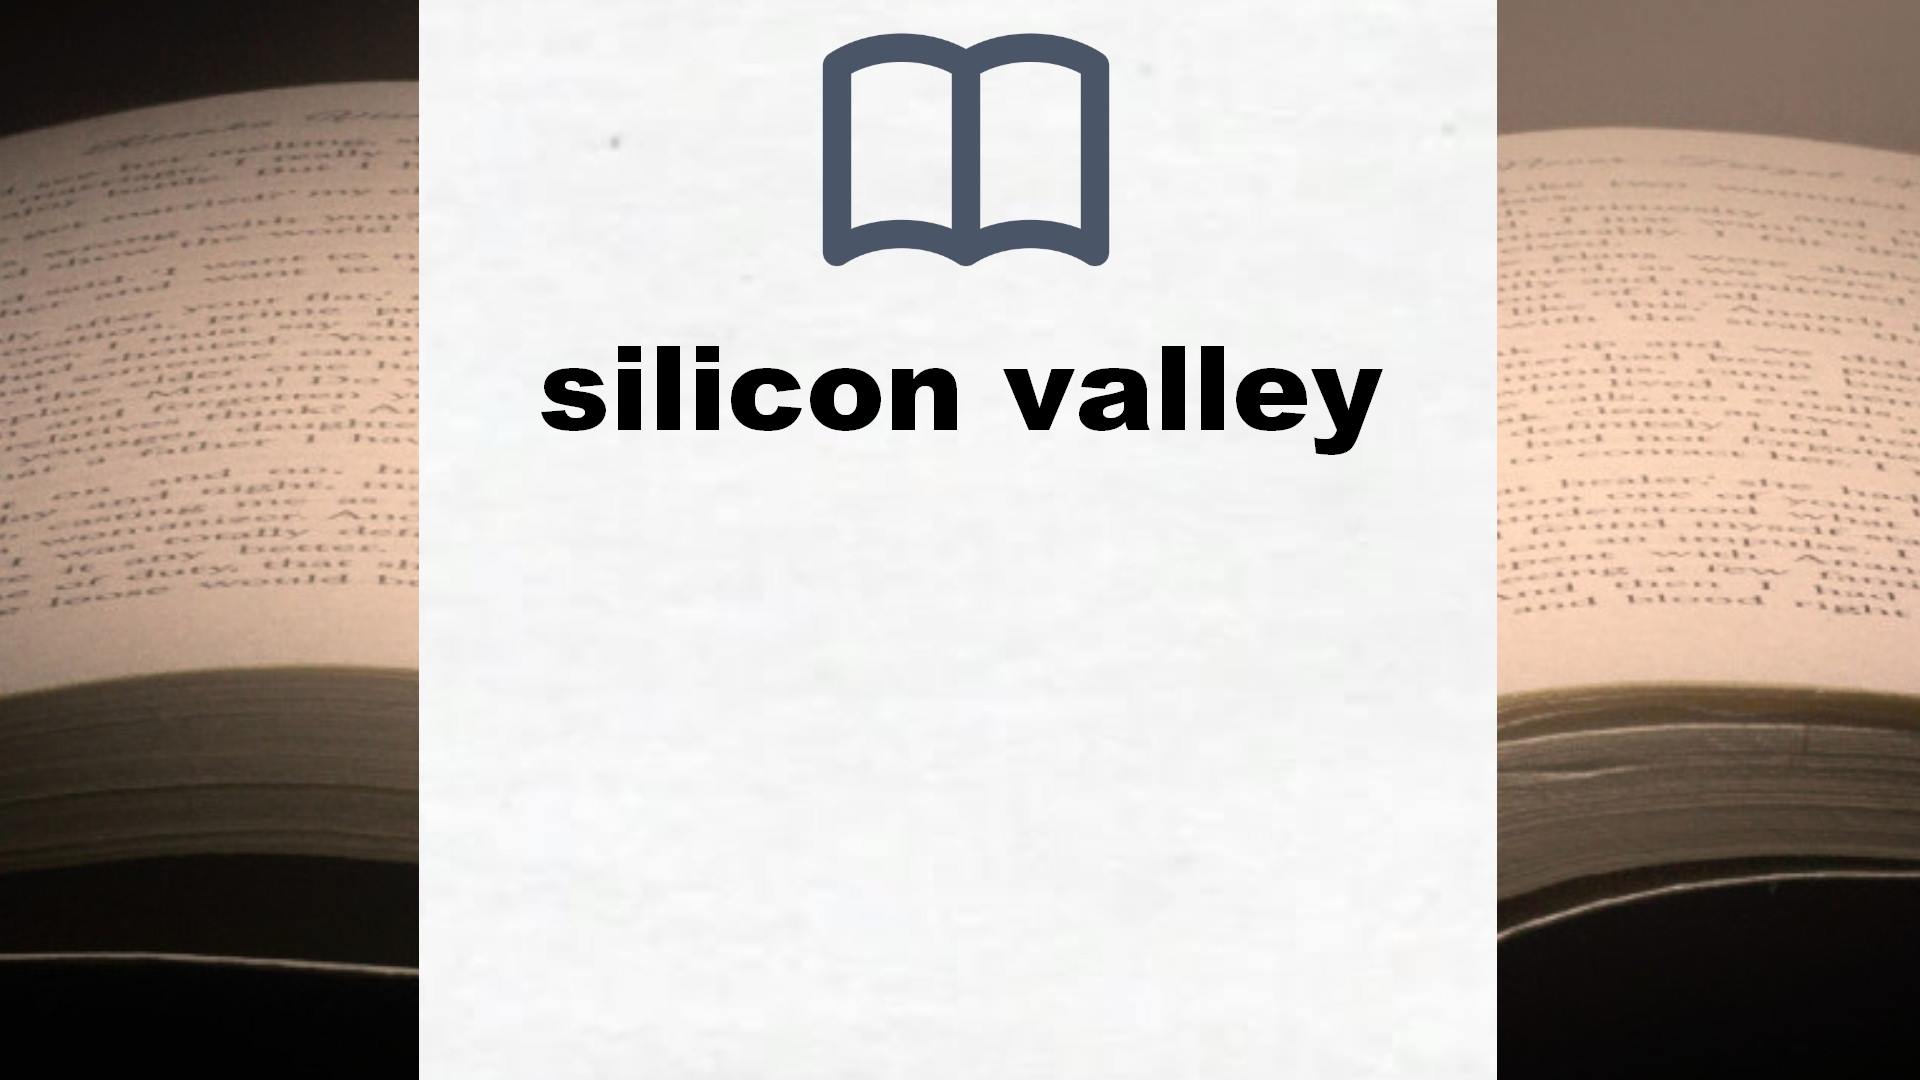 Libros sobre silicon valley